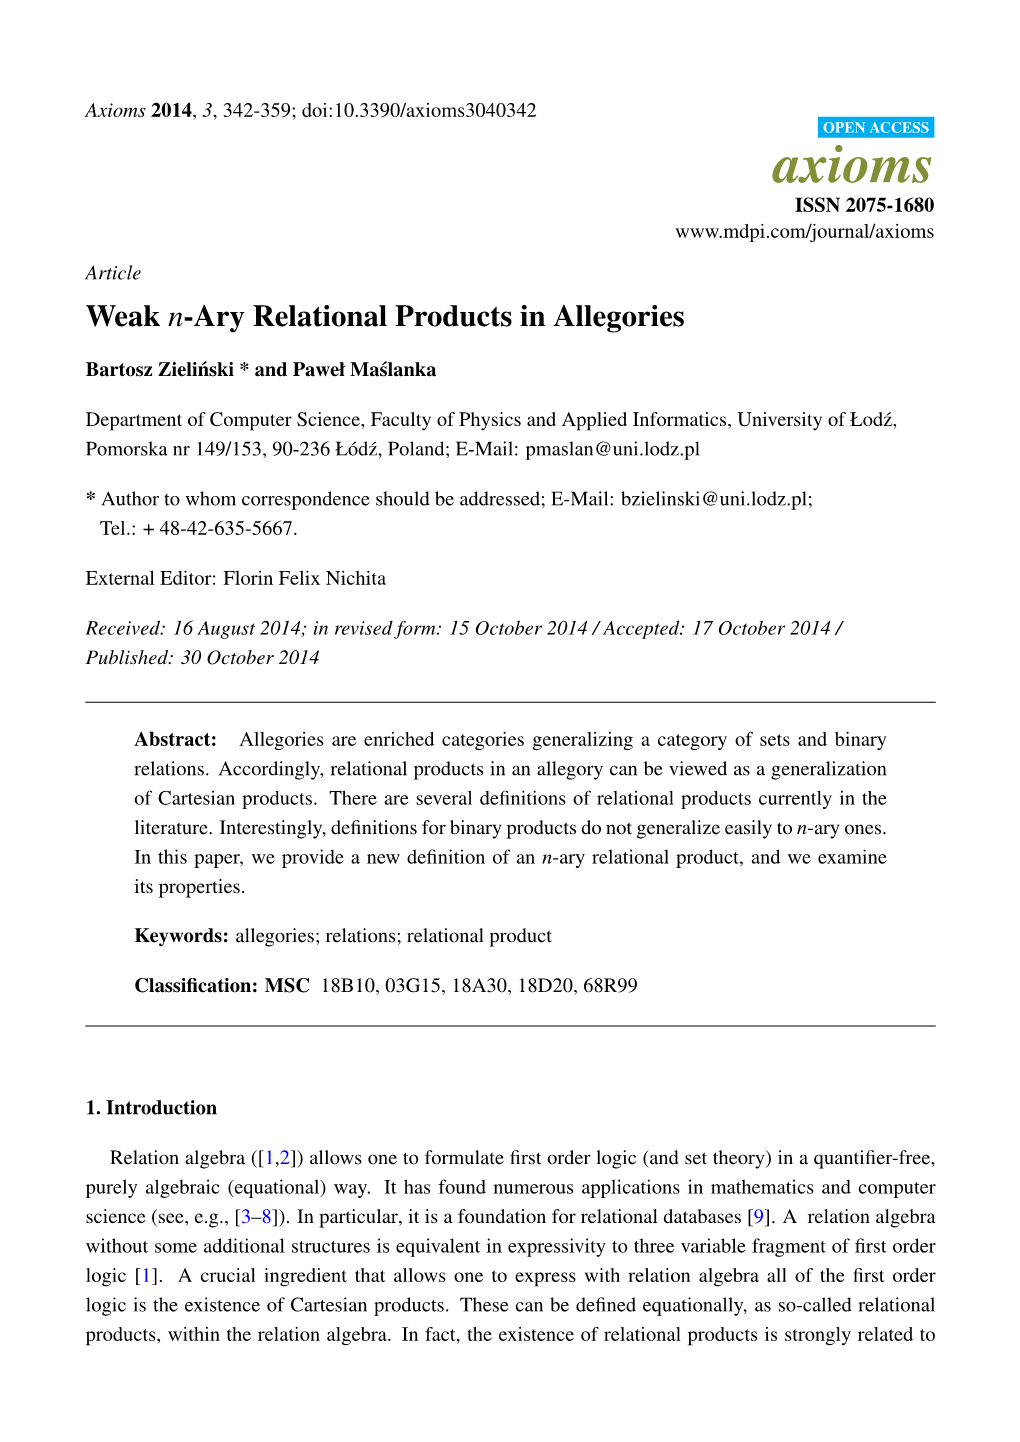 Weak N-Ary Relational Products in Allegories